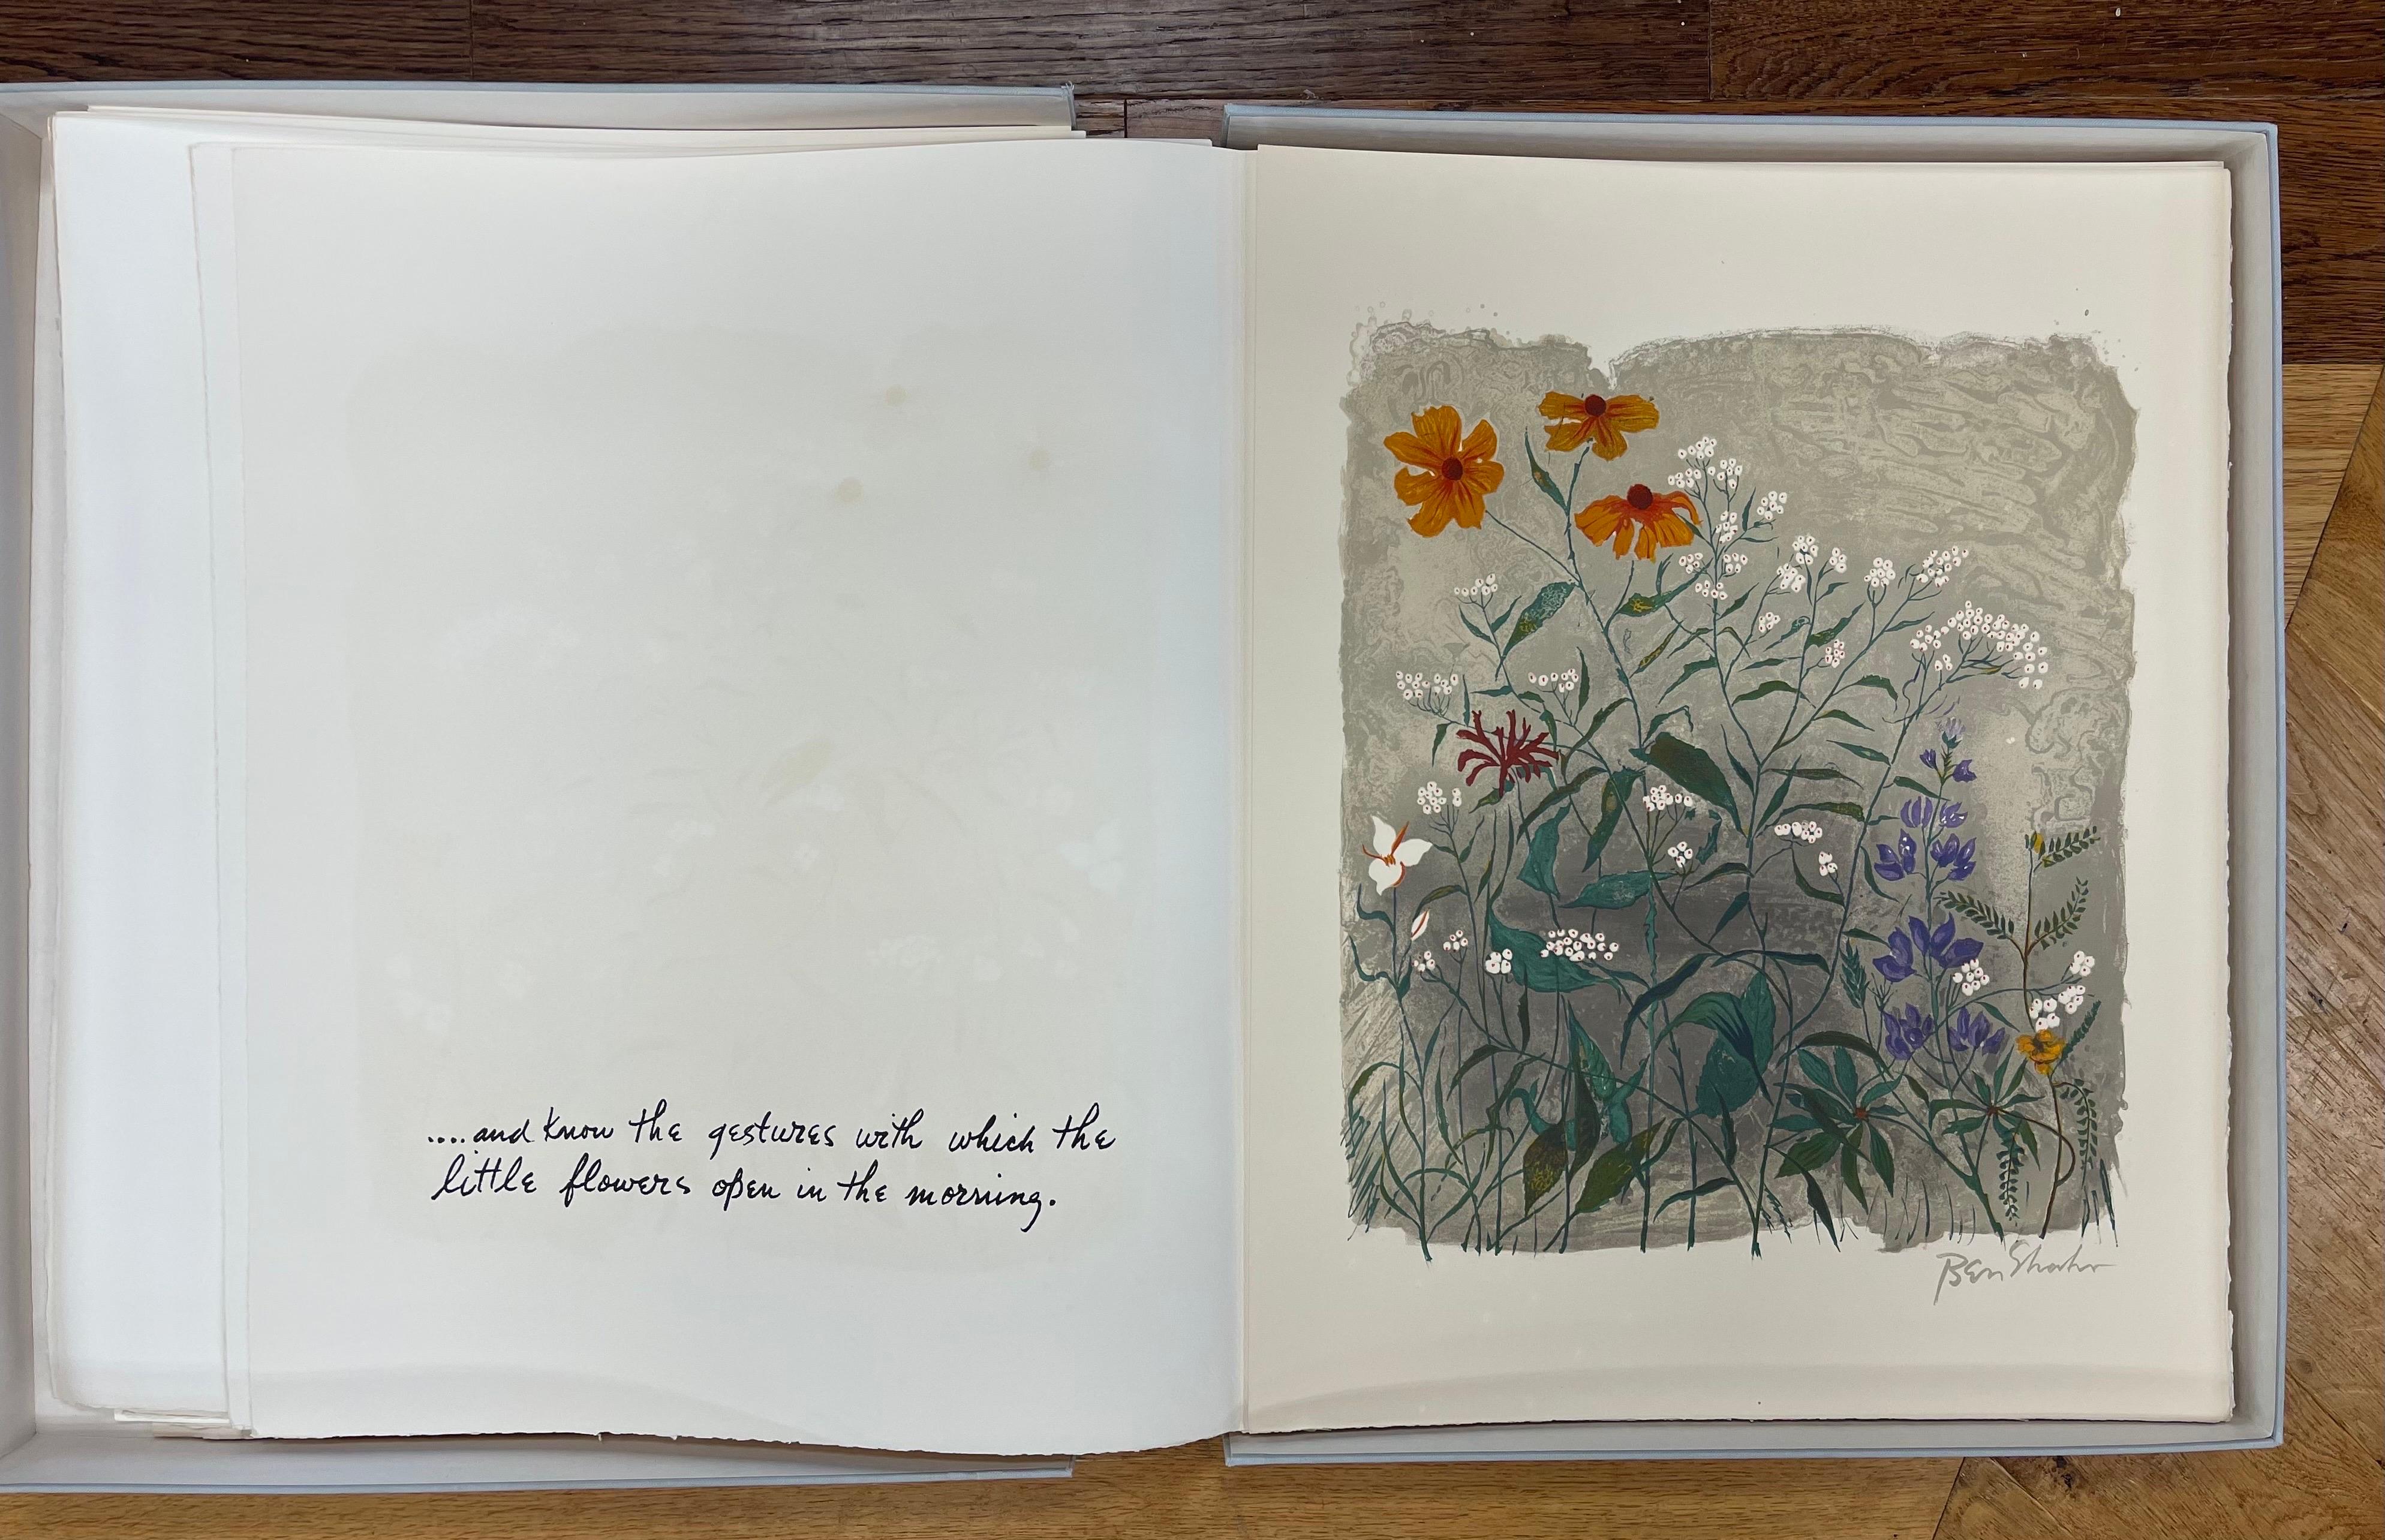 Ben Shahn portfolio très convoité en édition limitée #234 avec 24 lithographies de R. M. Rilke en vente 10